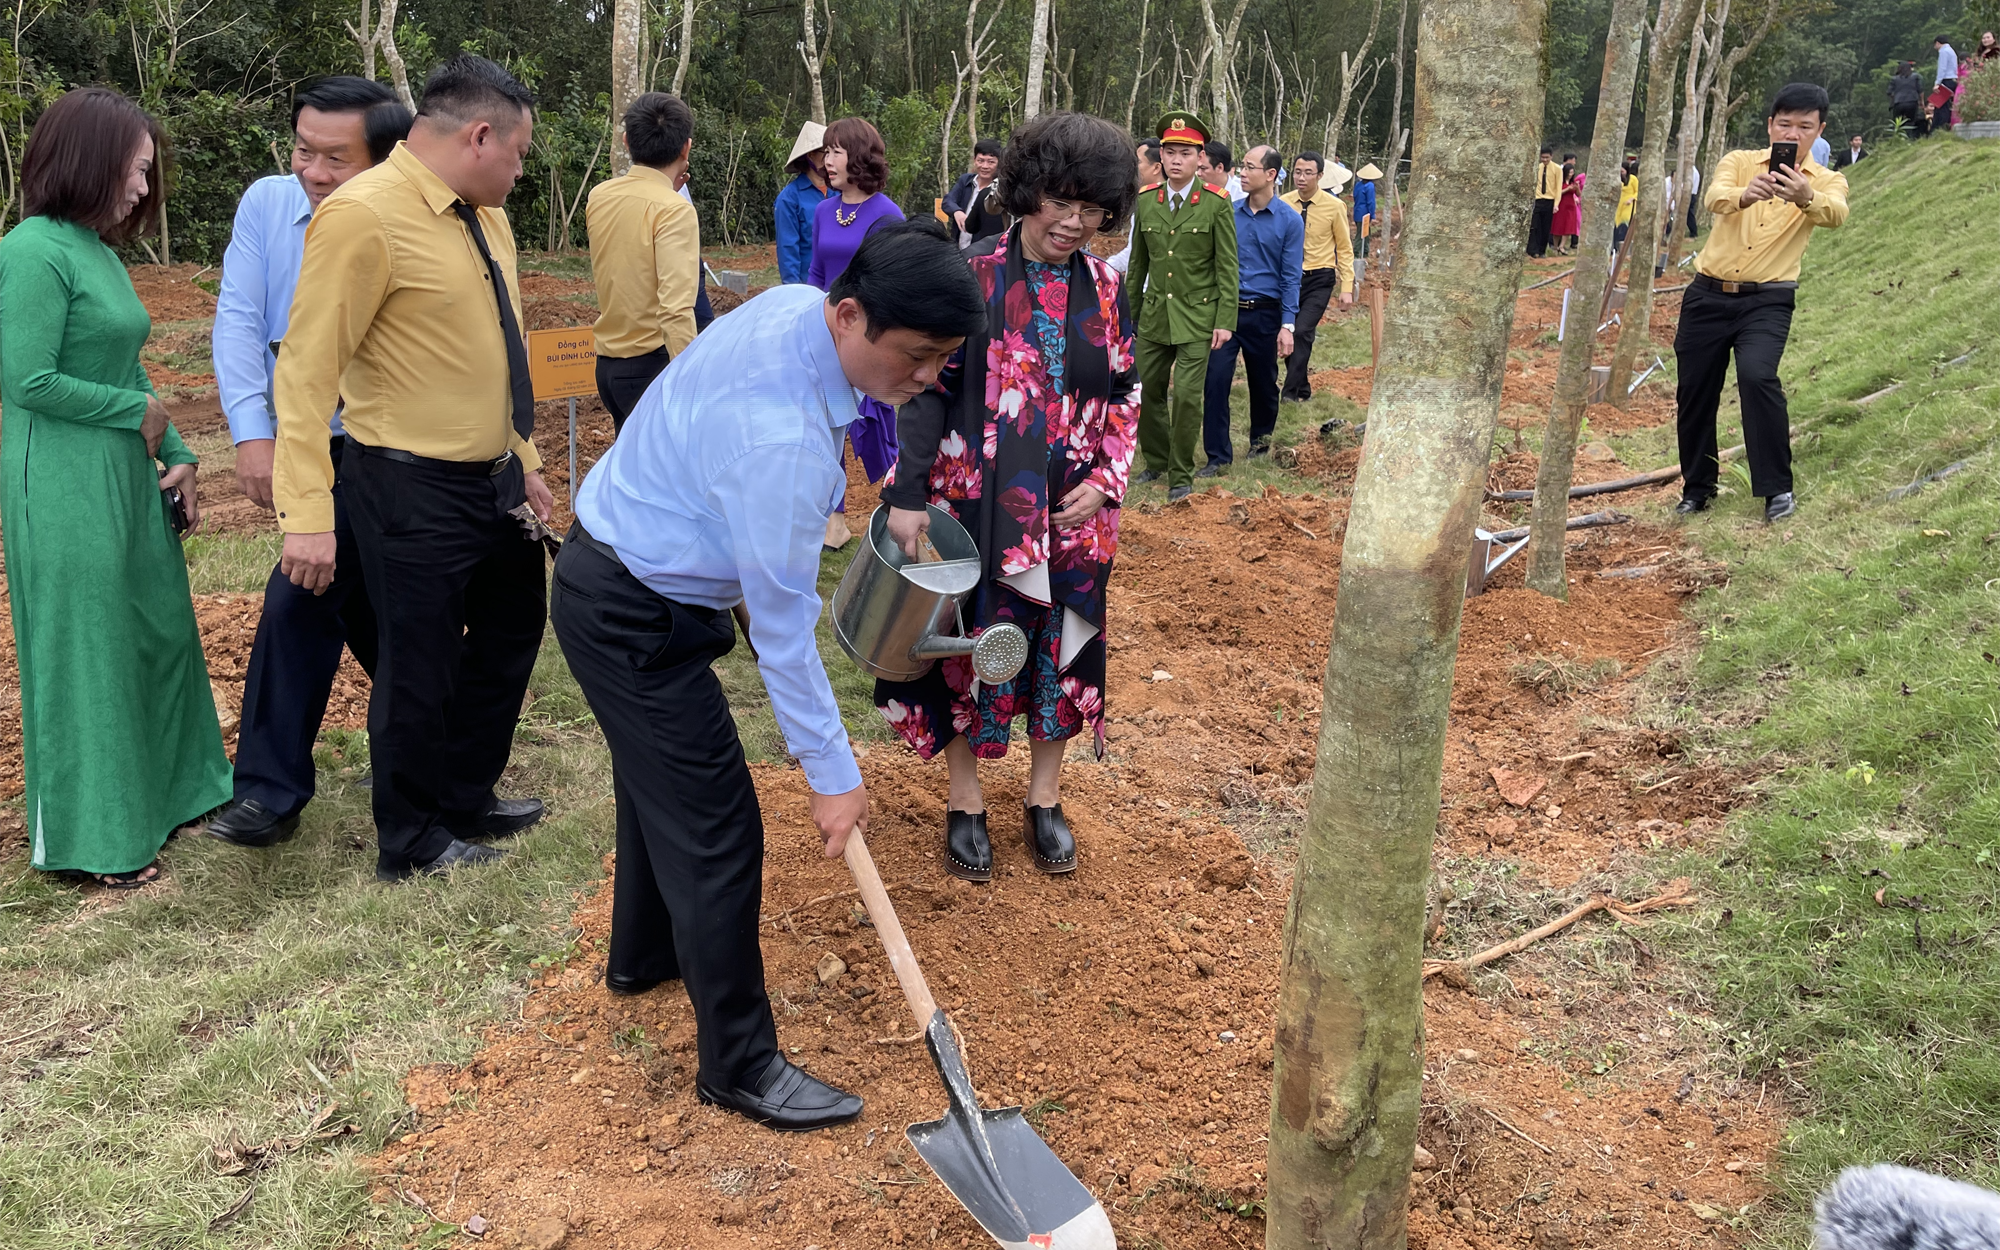 Hàng trăm cây xanh được trồng mới nhân dịp Tết trồng cây tại đền Chung Sơn – Đền thờ gia tiên Chủ tịch Hồ Chí  Minh